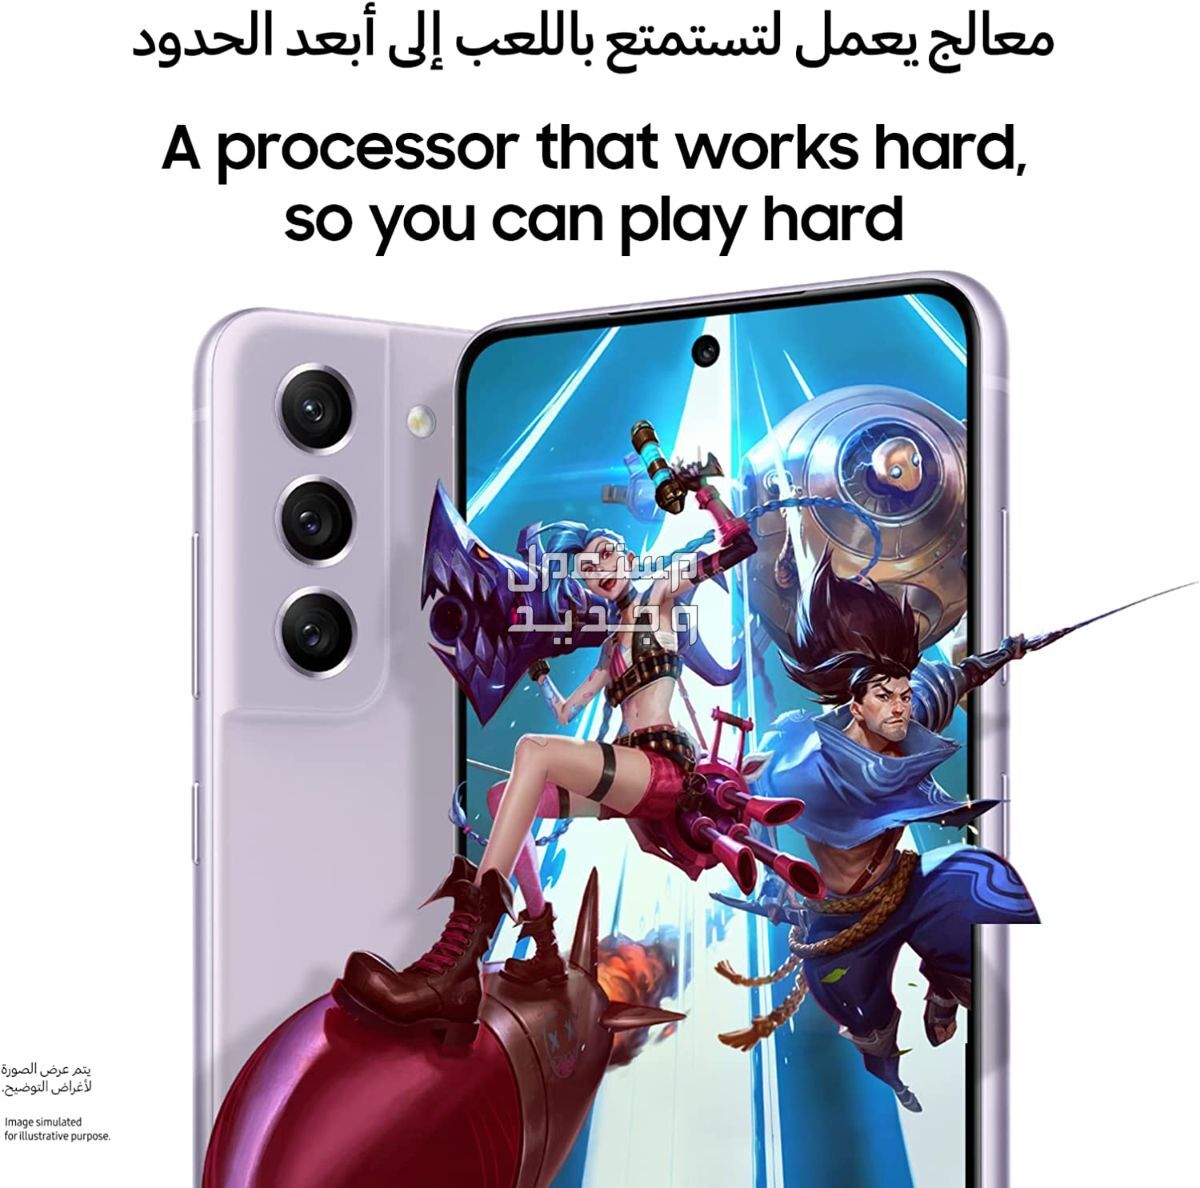 التطور المذهل للهواتف الذكية: إصدار سامسونج الأخير في الكويت إصدار سامسونج الأخير